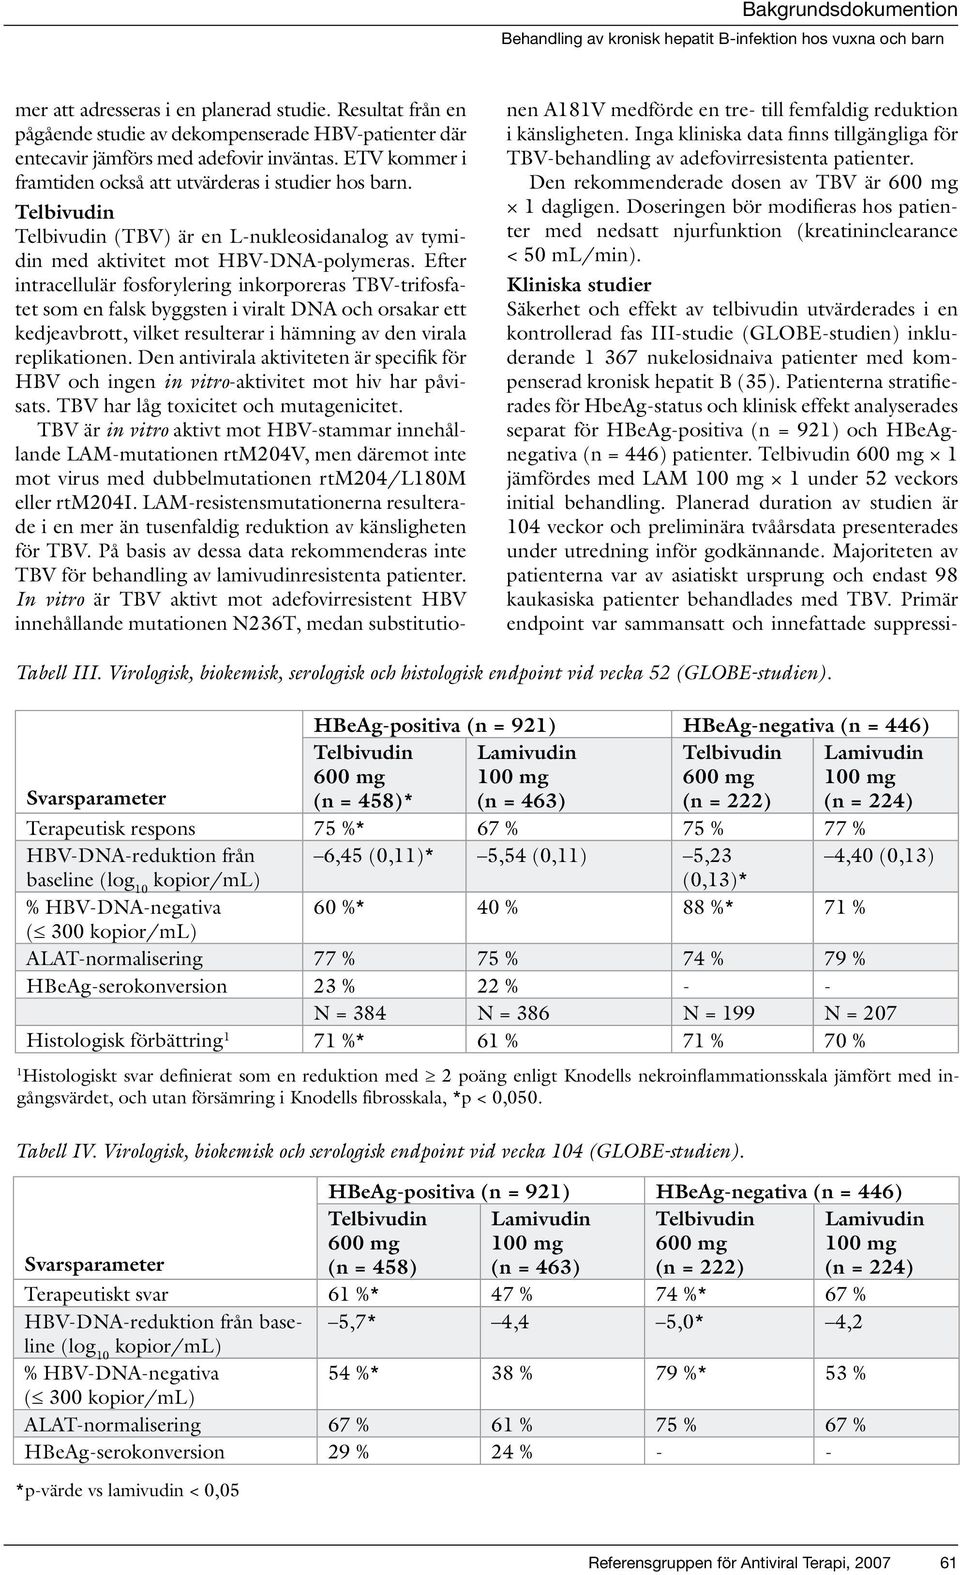 Kliniska studier Säkerhet och effekt av telbivudin utvärderades i en kontrollerad fas III-studie (GLOBE-studien) inkluderande 1 367 nukelosidnaiva patienter med kompenserad kronisk hepatit B (35).